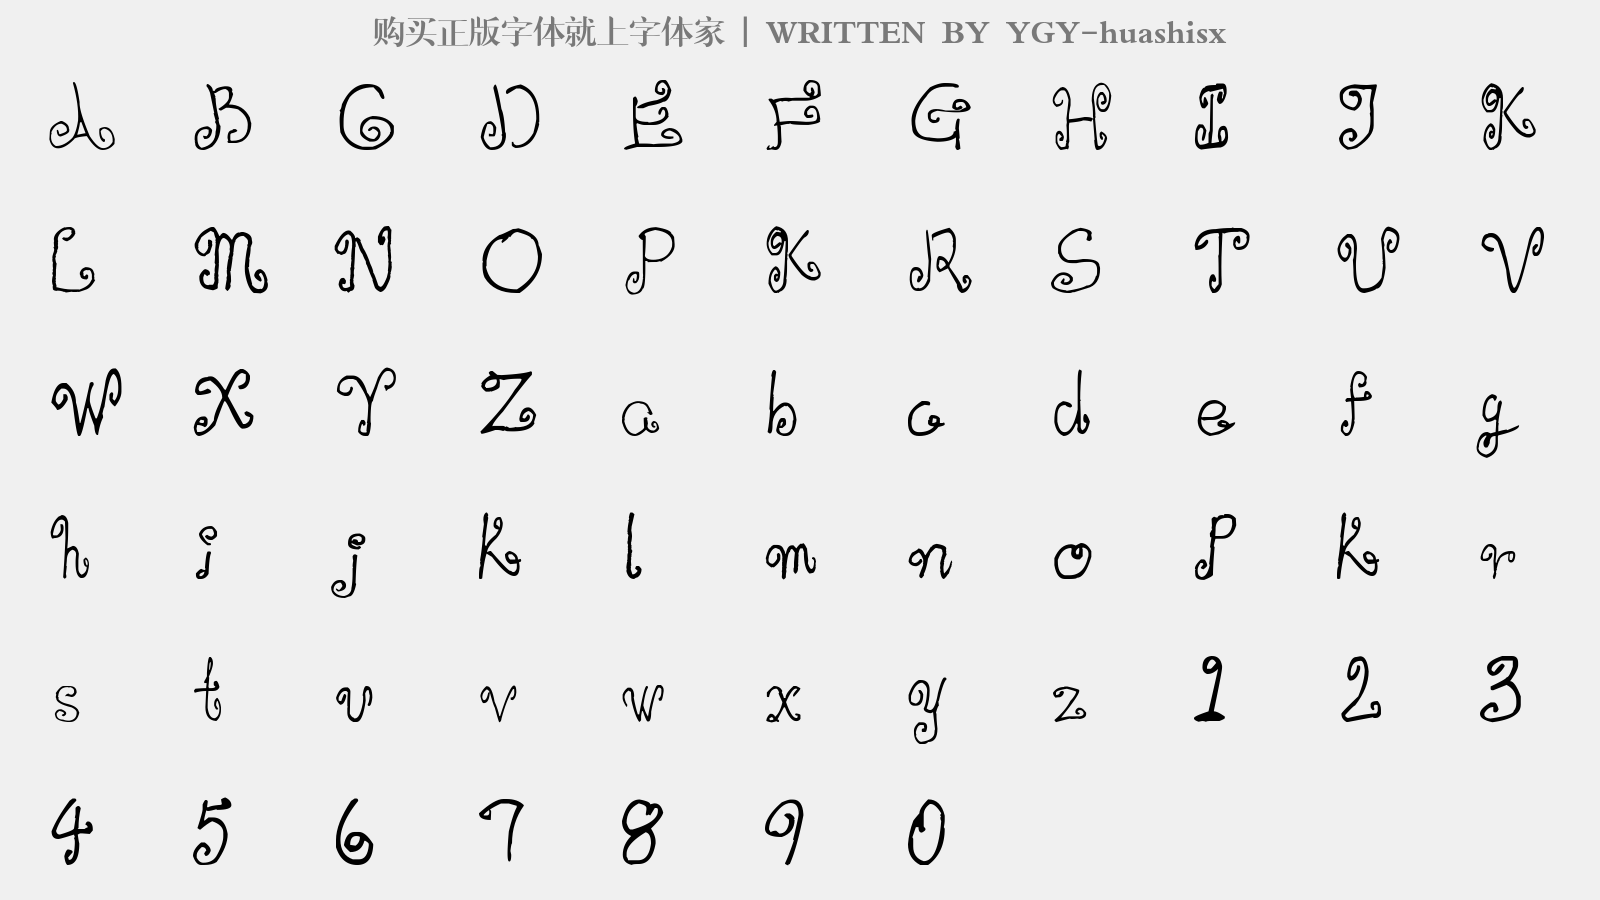 YGY-huashisx - 大写字母/小写字母/数字